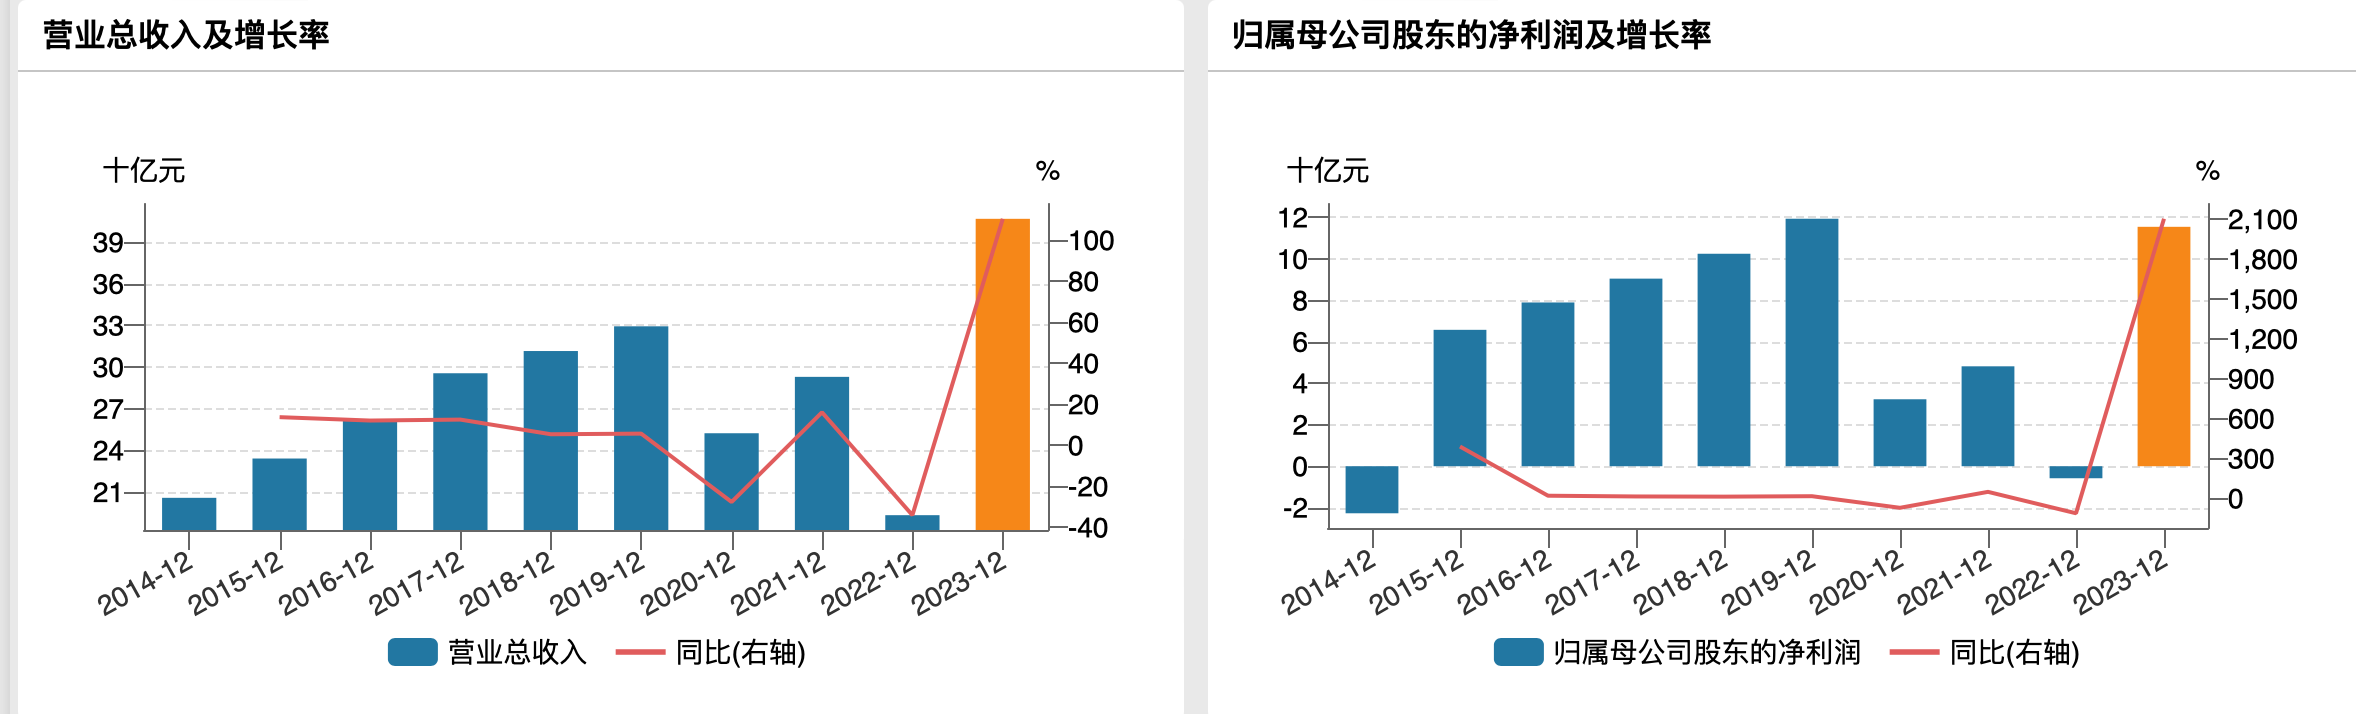 京沪高铁过往年度业绩，来源于wind